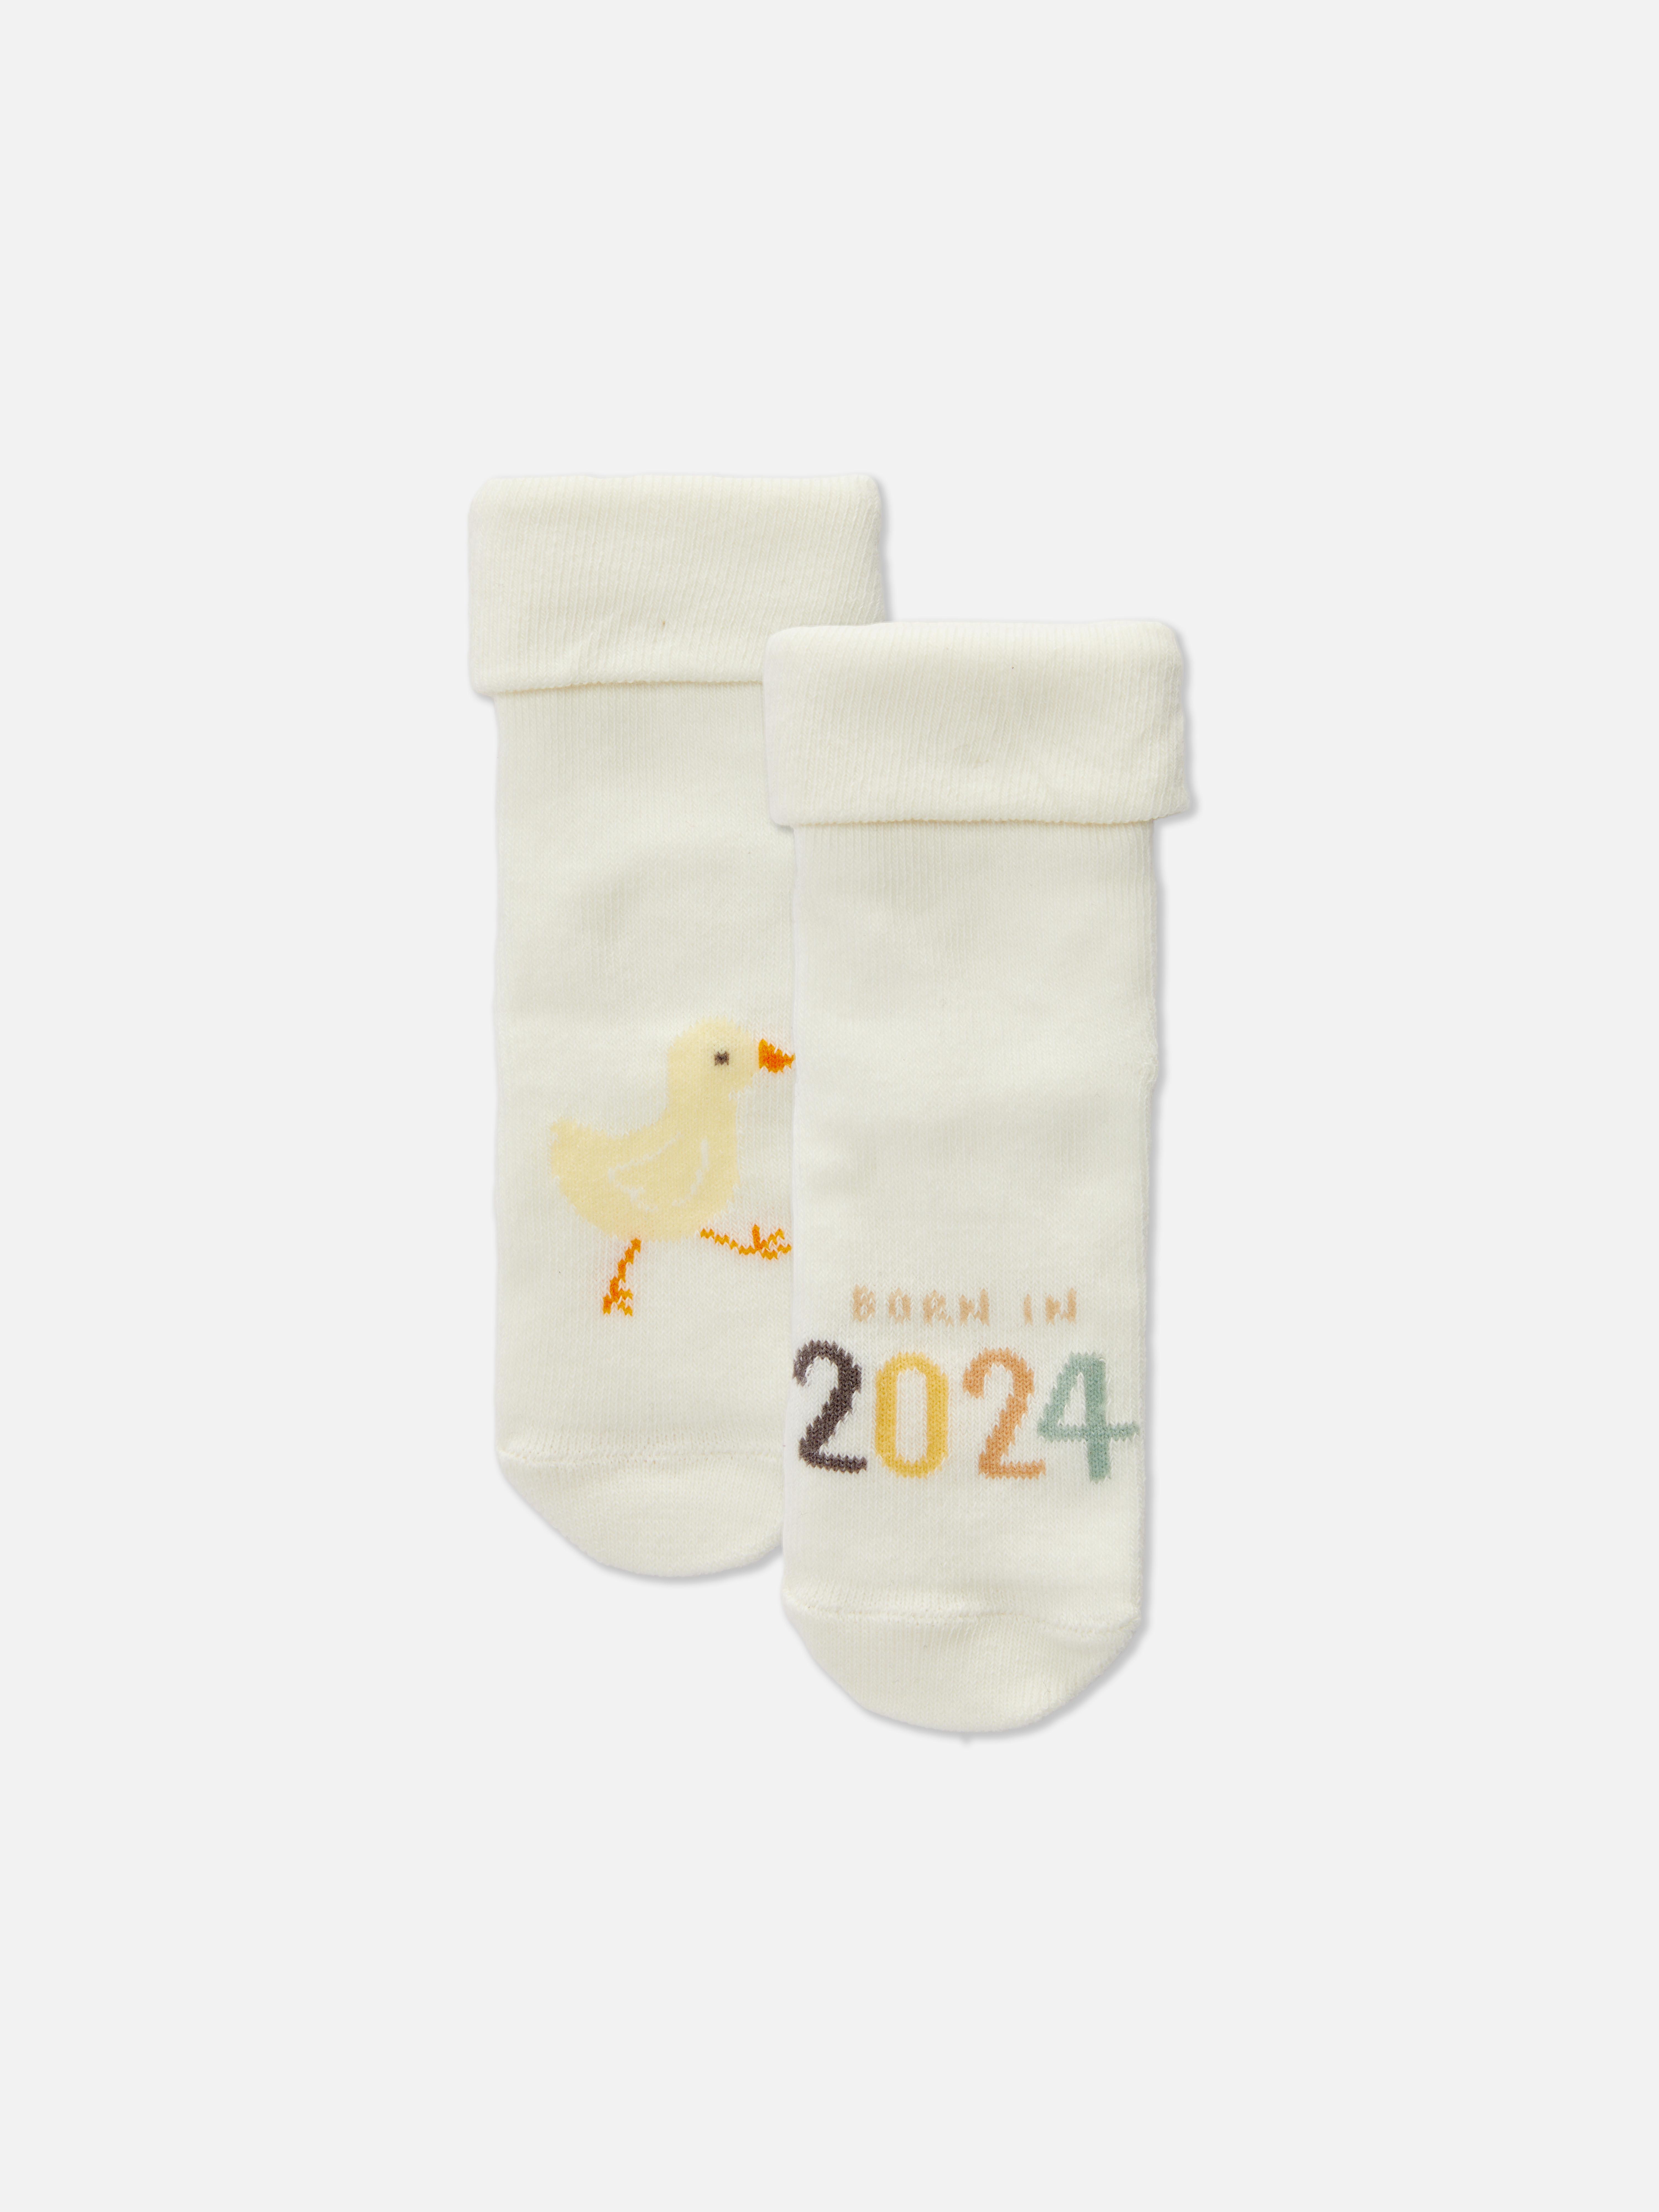 Born in 2024 Printed Socks